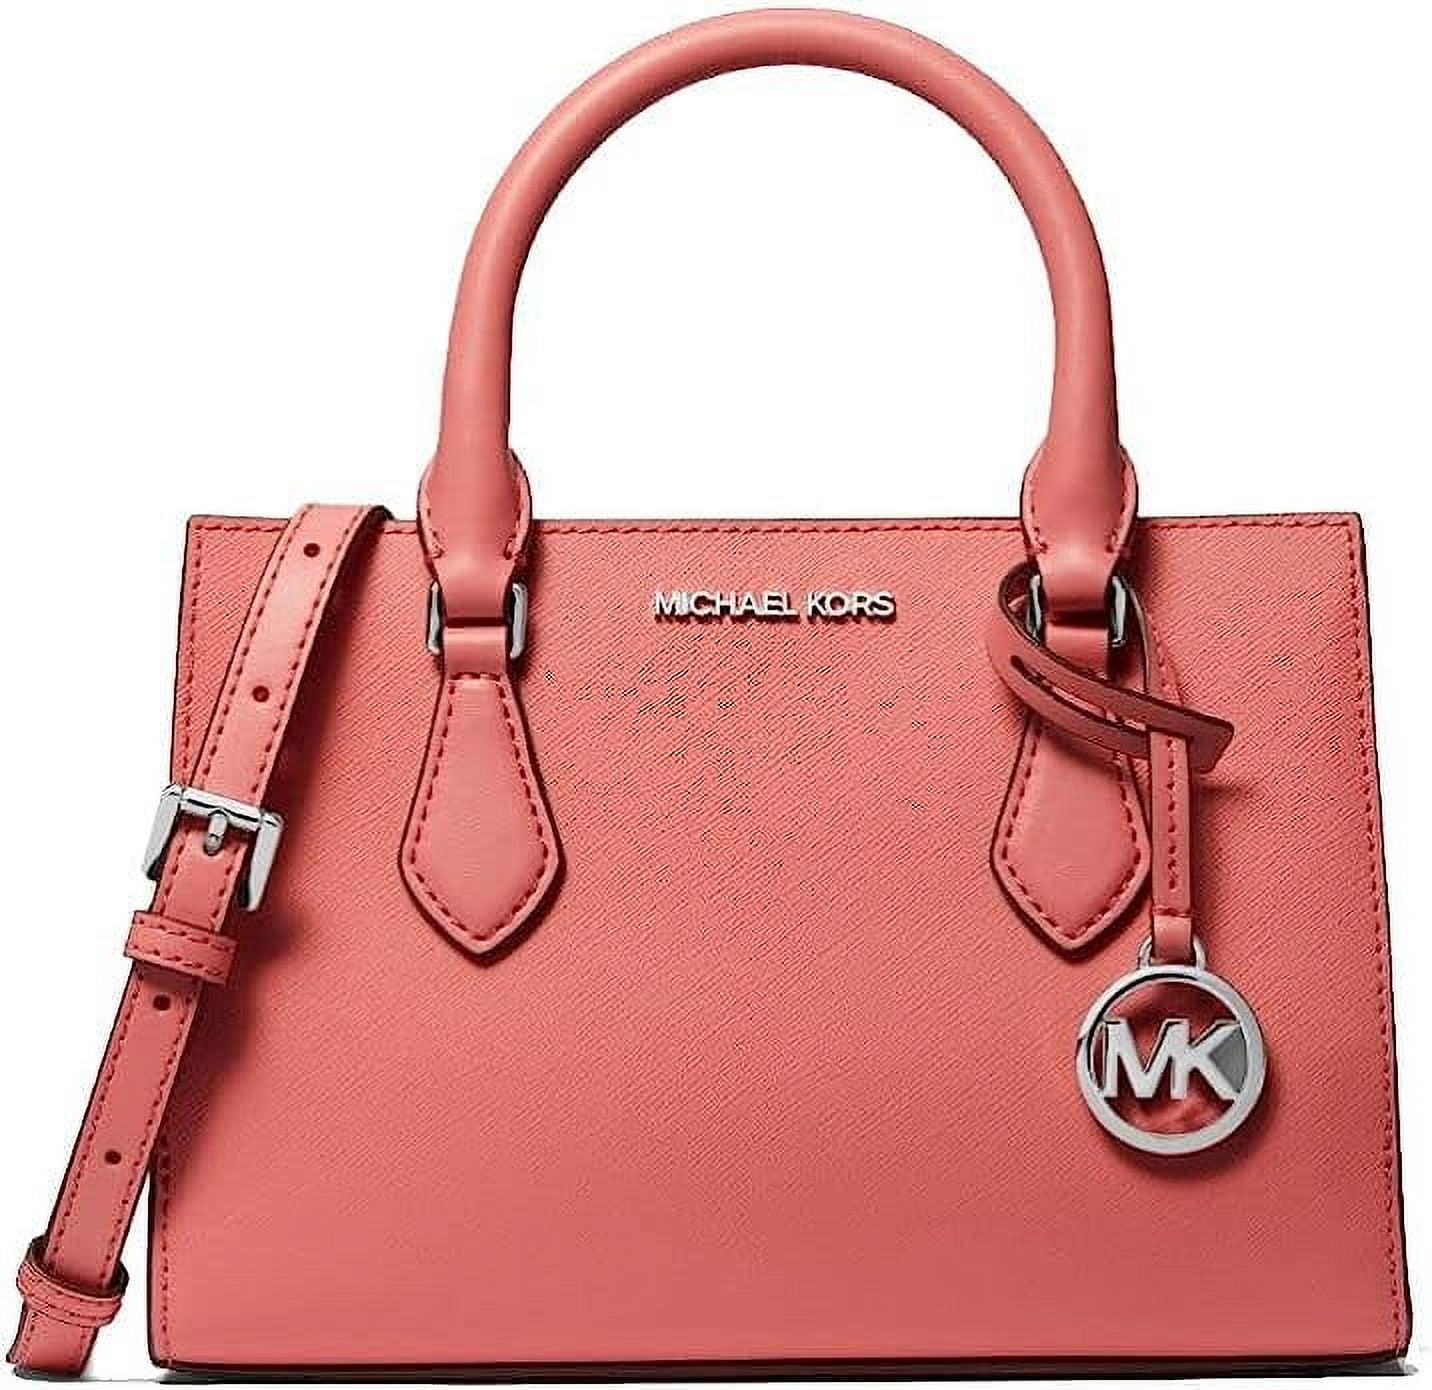 MICHAEL KORS: Michael bag in nylon - Pink | MICHAEL KORS mini bag  32R3ST9C1C online at GIGLIO.COM